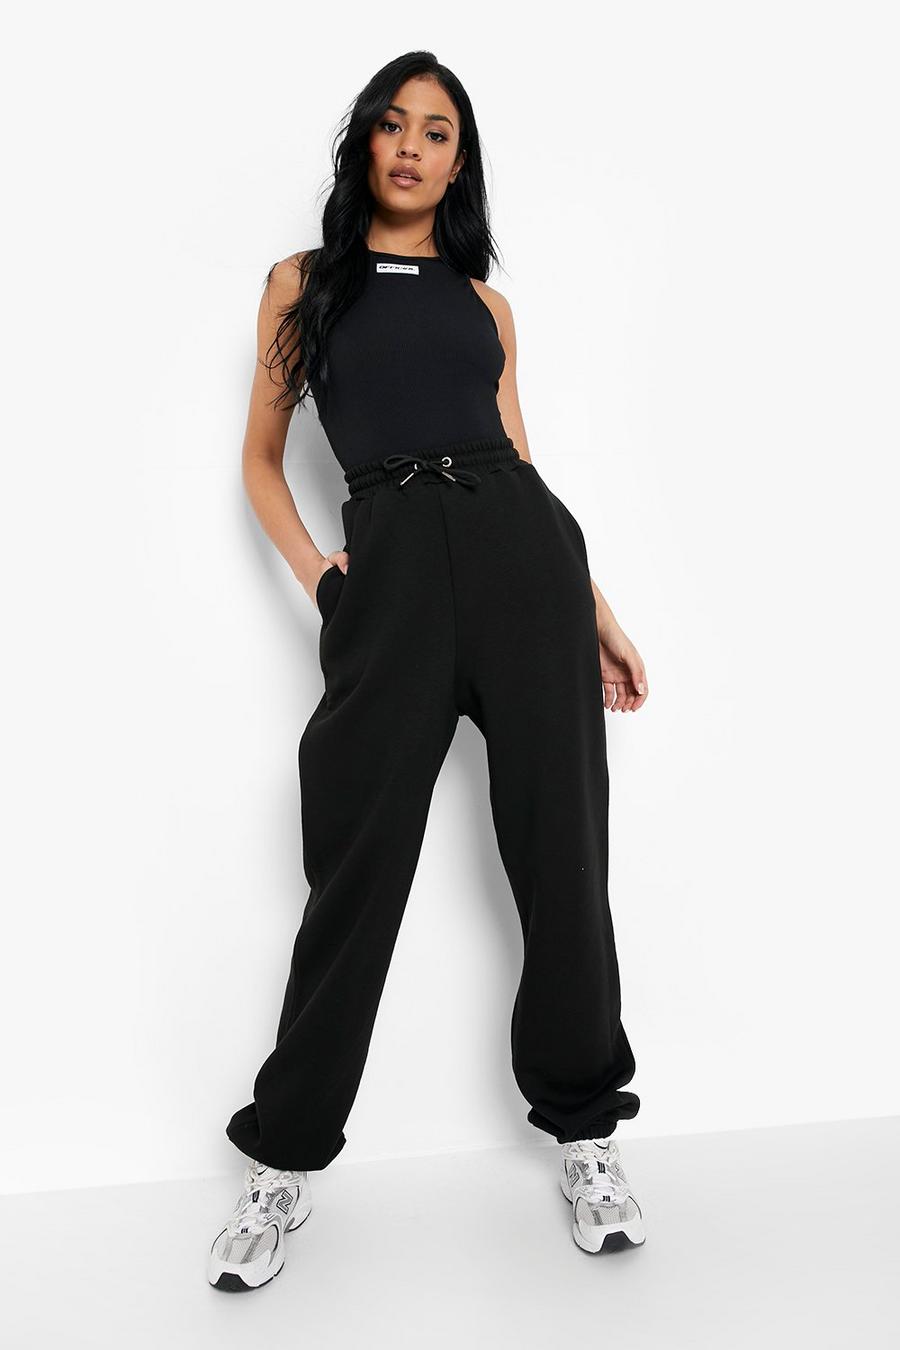 שחור black מכנסי ריצה אוברסייז מבד ממוחזר לנשים גבוהות